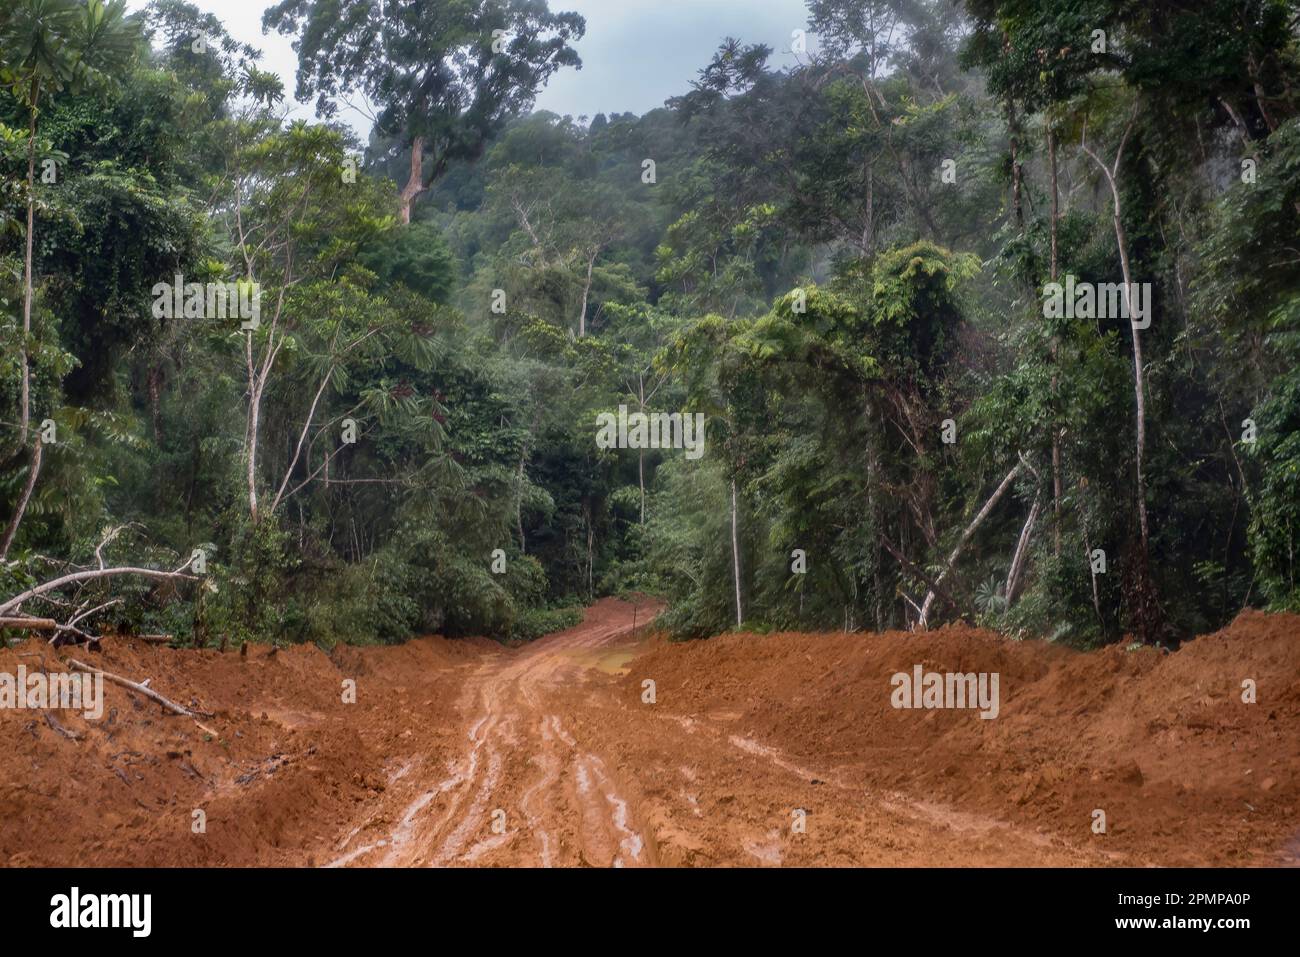 Zone fortement boisée dans la région de Nkollo au Cameroun. Les routes non nivelées et non pavées ont de grandes piscines d'eau stagnante, faisant souvent du transport... Banque D'Images